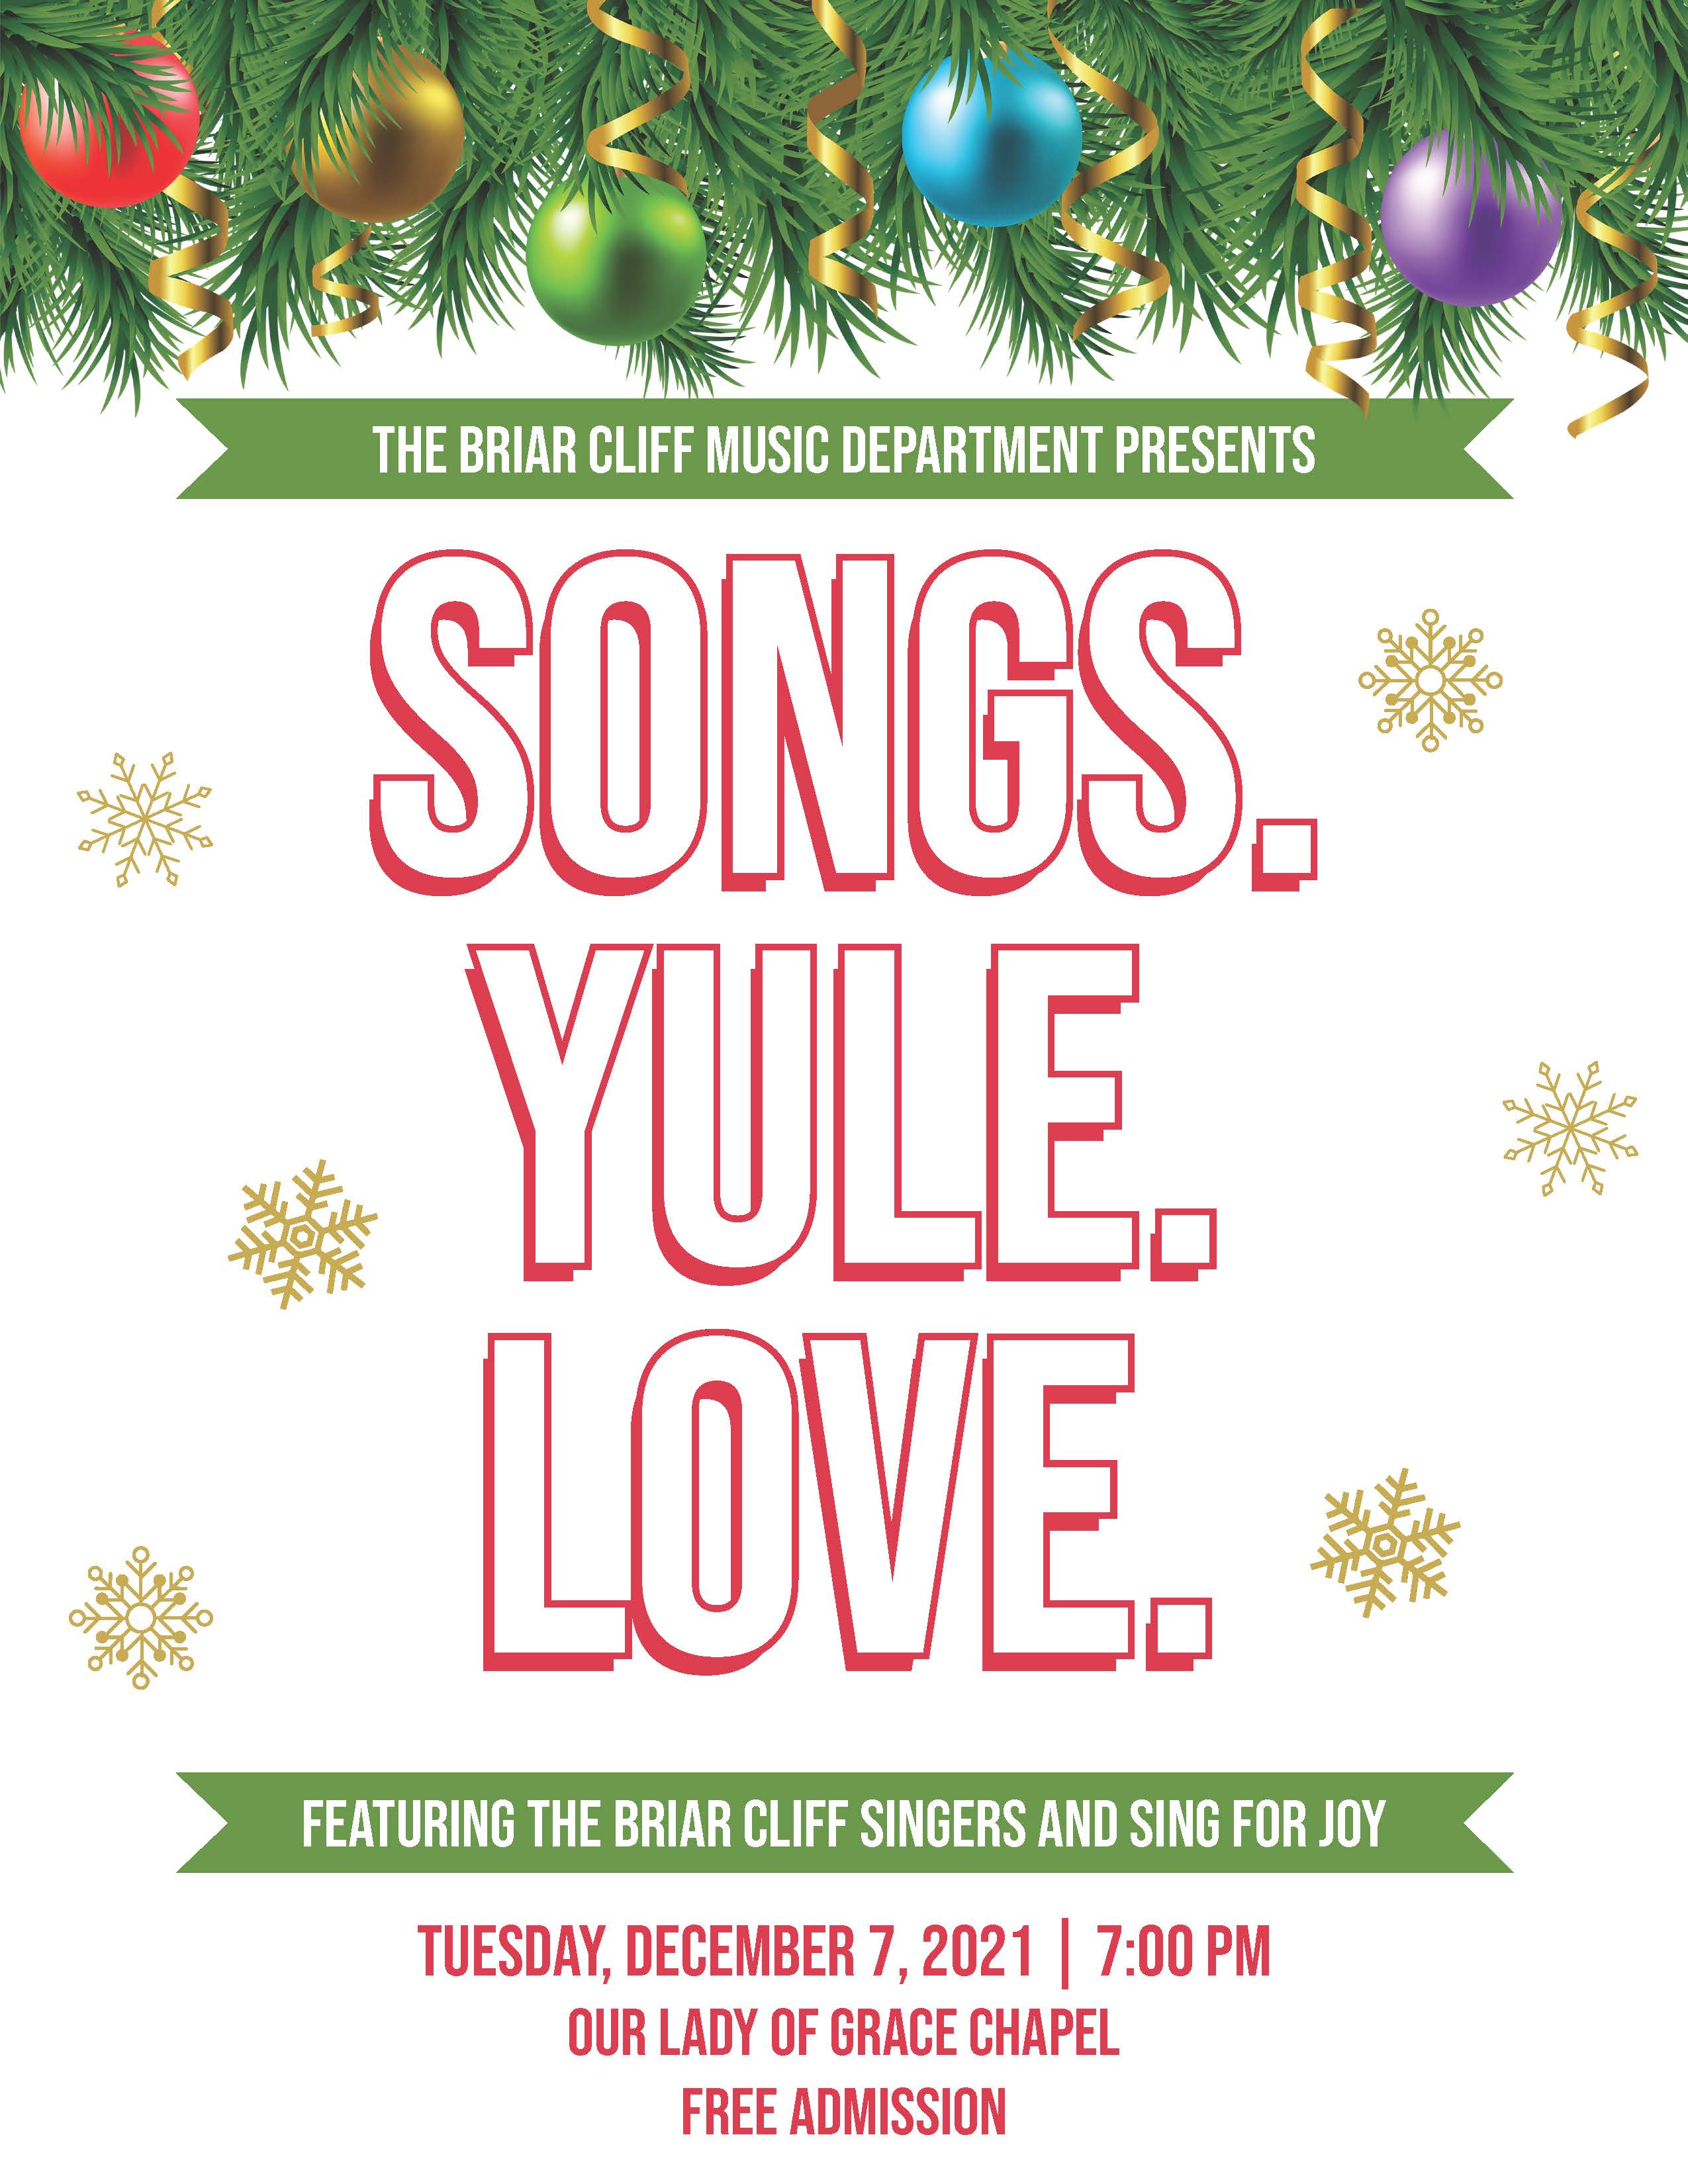 Songs. Yule. Love. poster